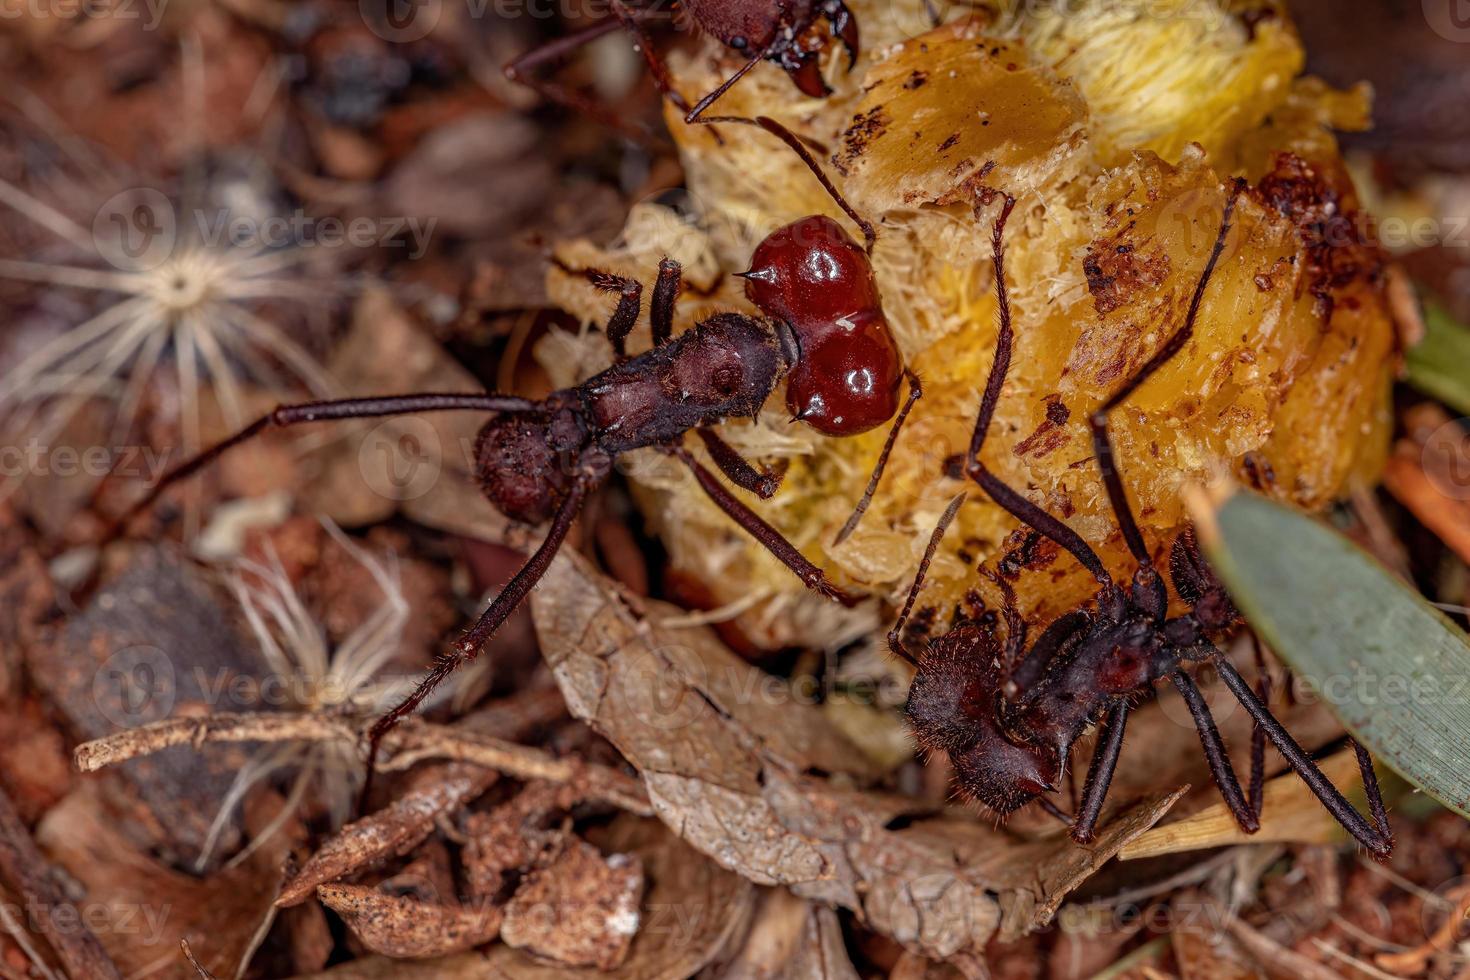 Atta hormiga cortadora de hojas foto